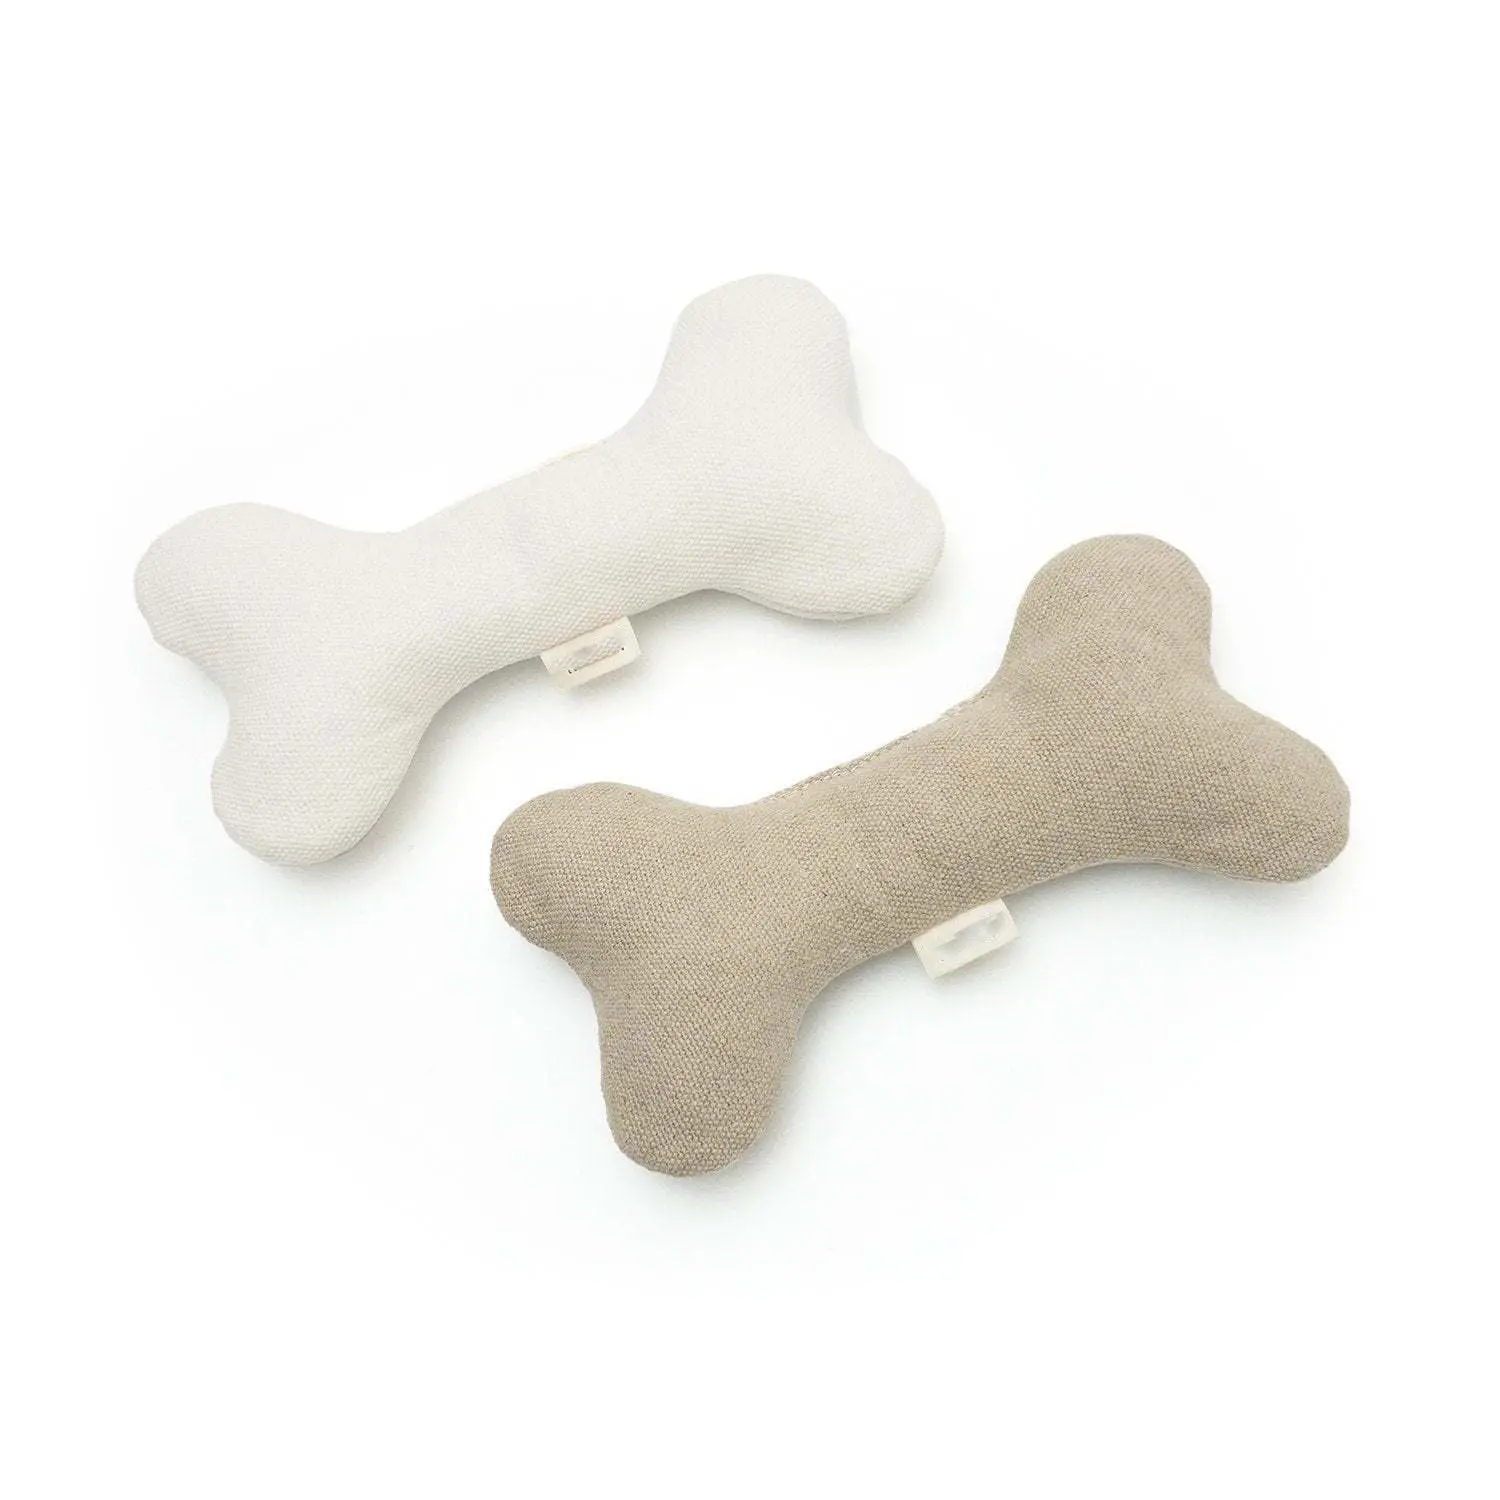 צורת עצם מותאמת אישית לבד צעצועי כלבים עמידים בפני דמעות צעצועי בקיעת שיניים לכלבים ג'ה-ג'יאנג אימון אינטראקטיבי קשר חבל עצמות קטיפה לשני המינים